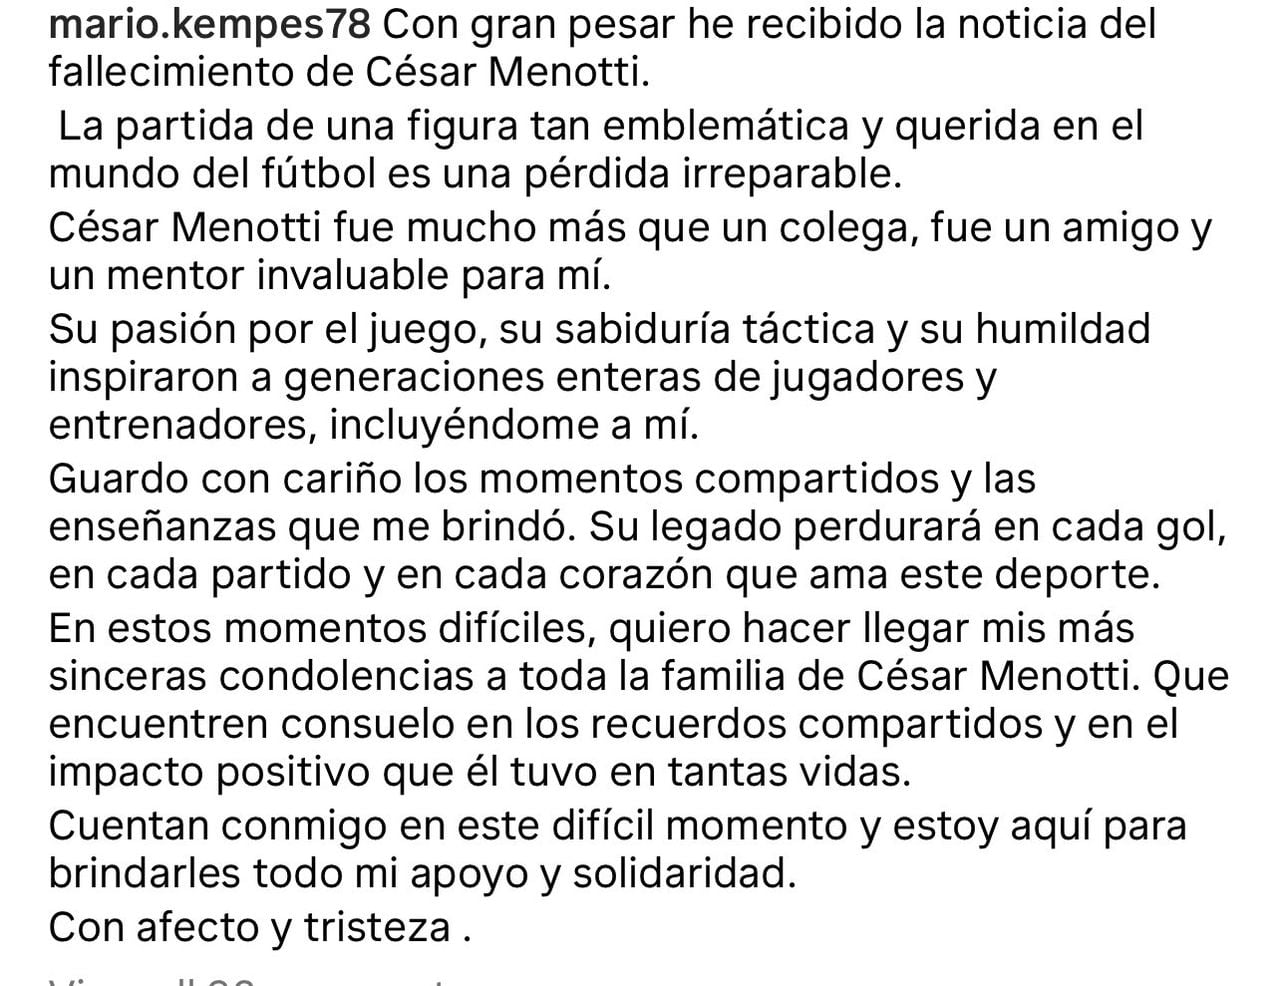 La extensa y emotiva carta que Mario Alberto Kempes le dejó al que fue su técnico en el Mundial de Argentina 78.